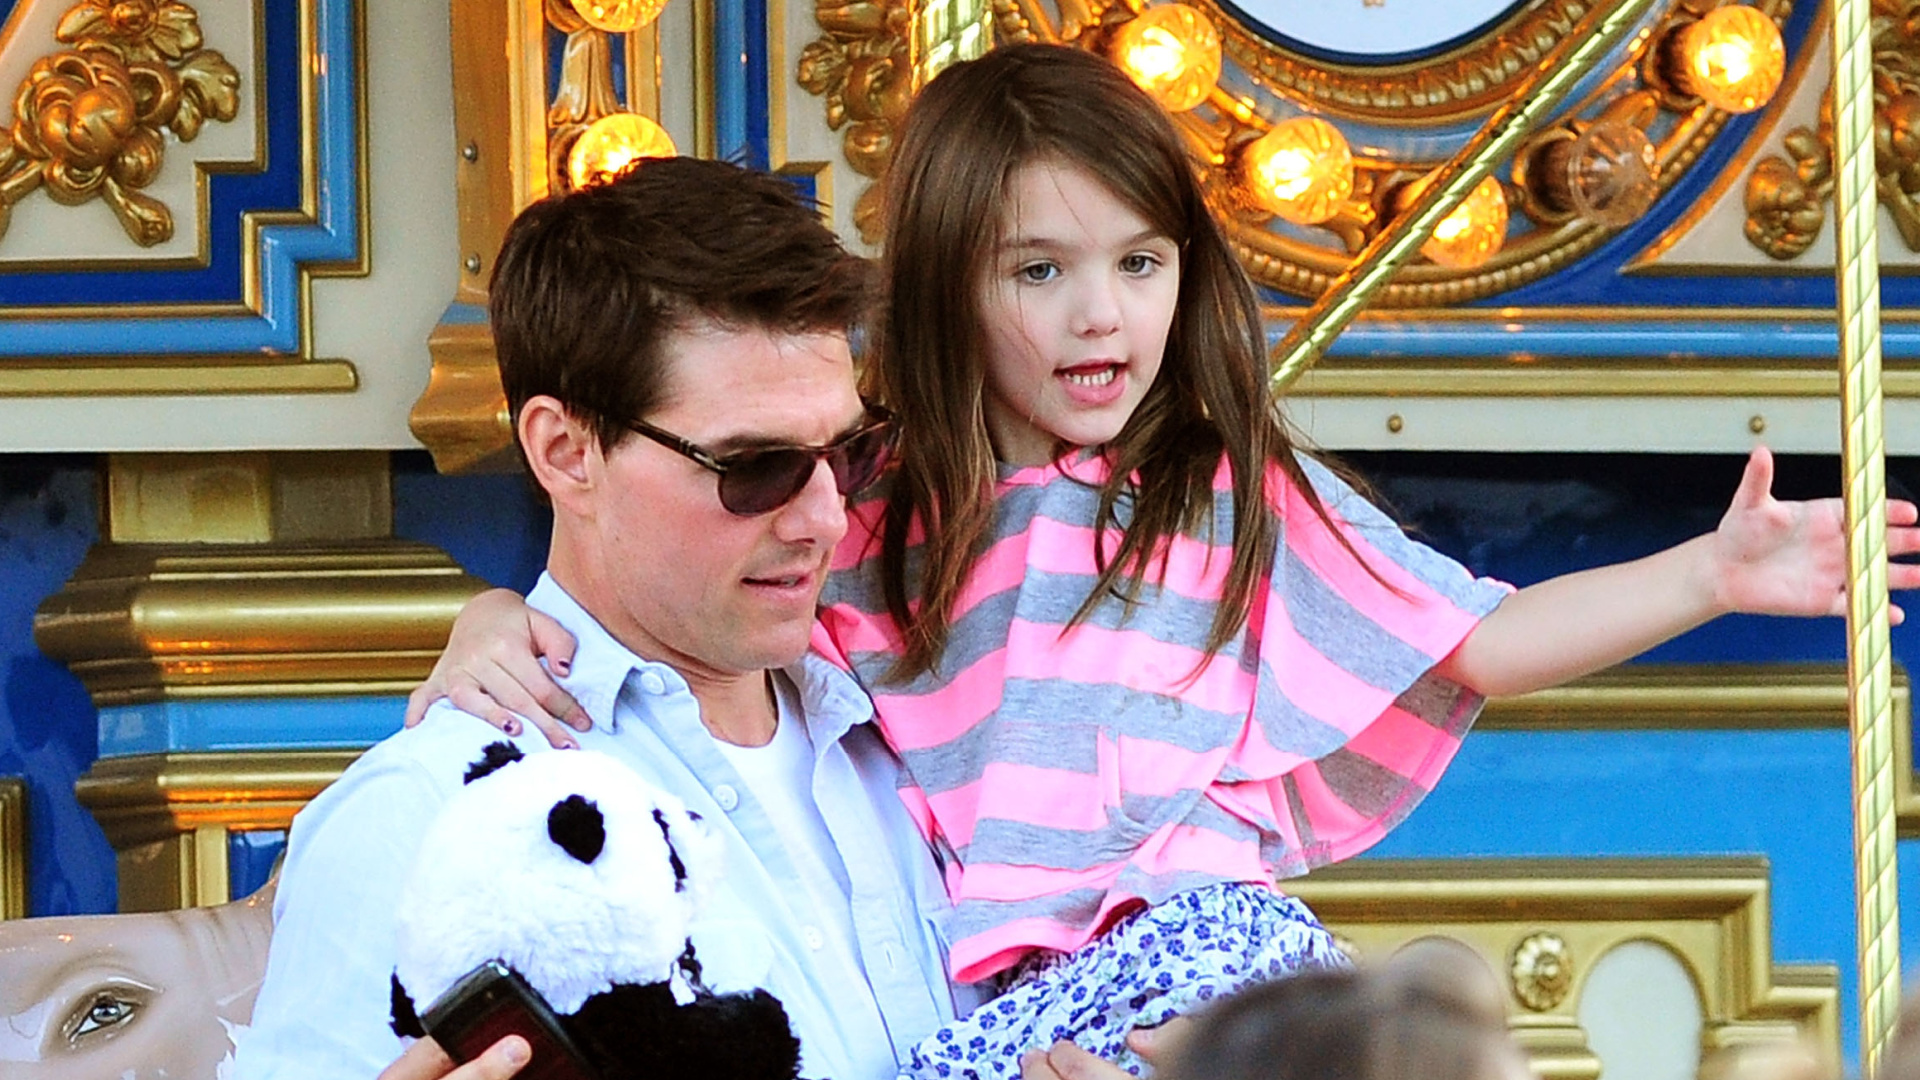 De ingrijpende beslissing van Suri, dochter van Tom Cruise en Katie Holmes